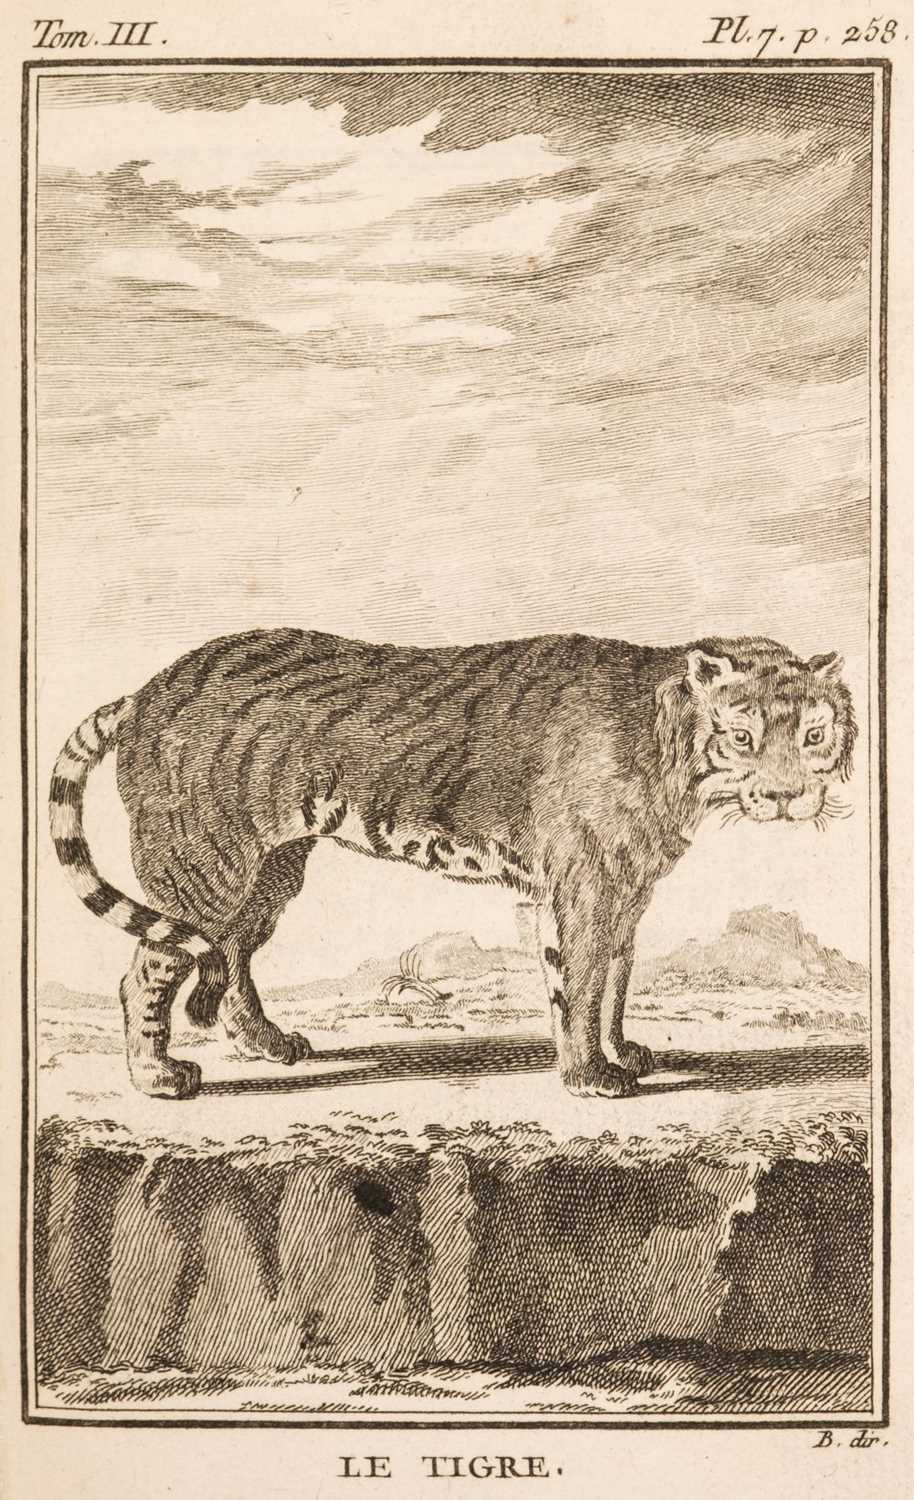 Lot 352 - Buffon (Georges-Louis Leclerc, Comte de) Oeuvres Completes, 18 vols, 1774-77